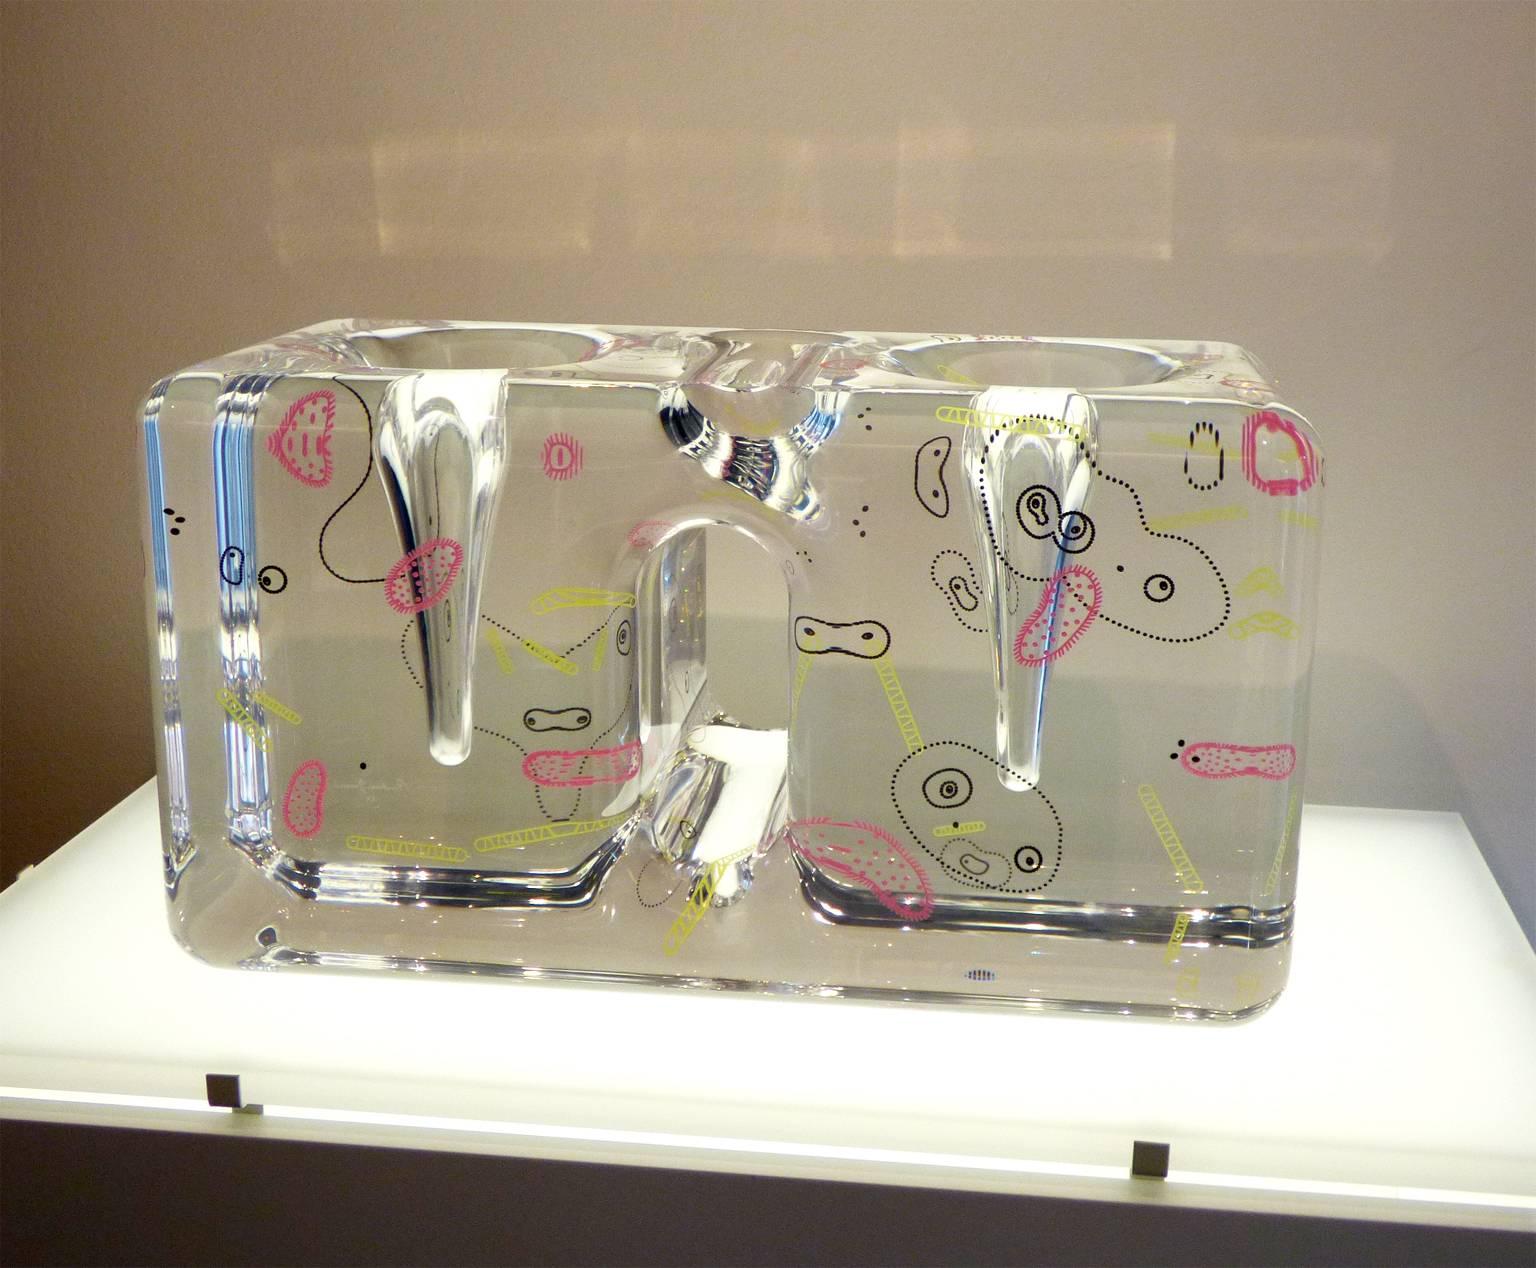 Plexiglass vase 'Sciami' designed by Andrea Branzi for Metea in 2007. Prototype. Limited edition. Signed.